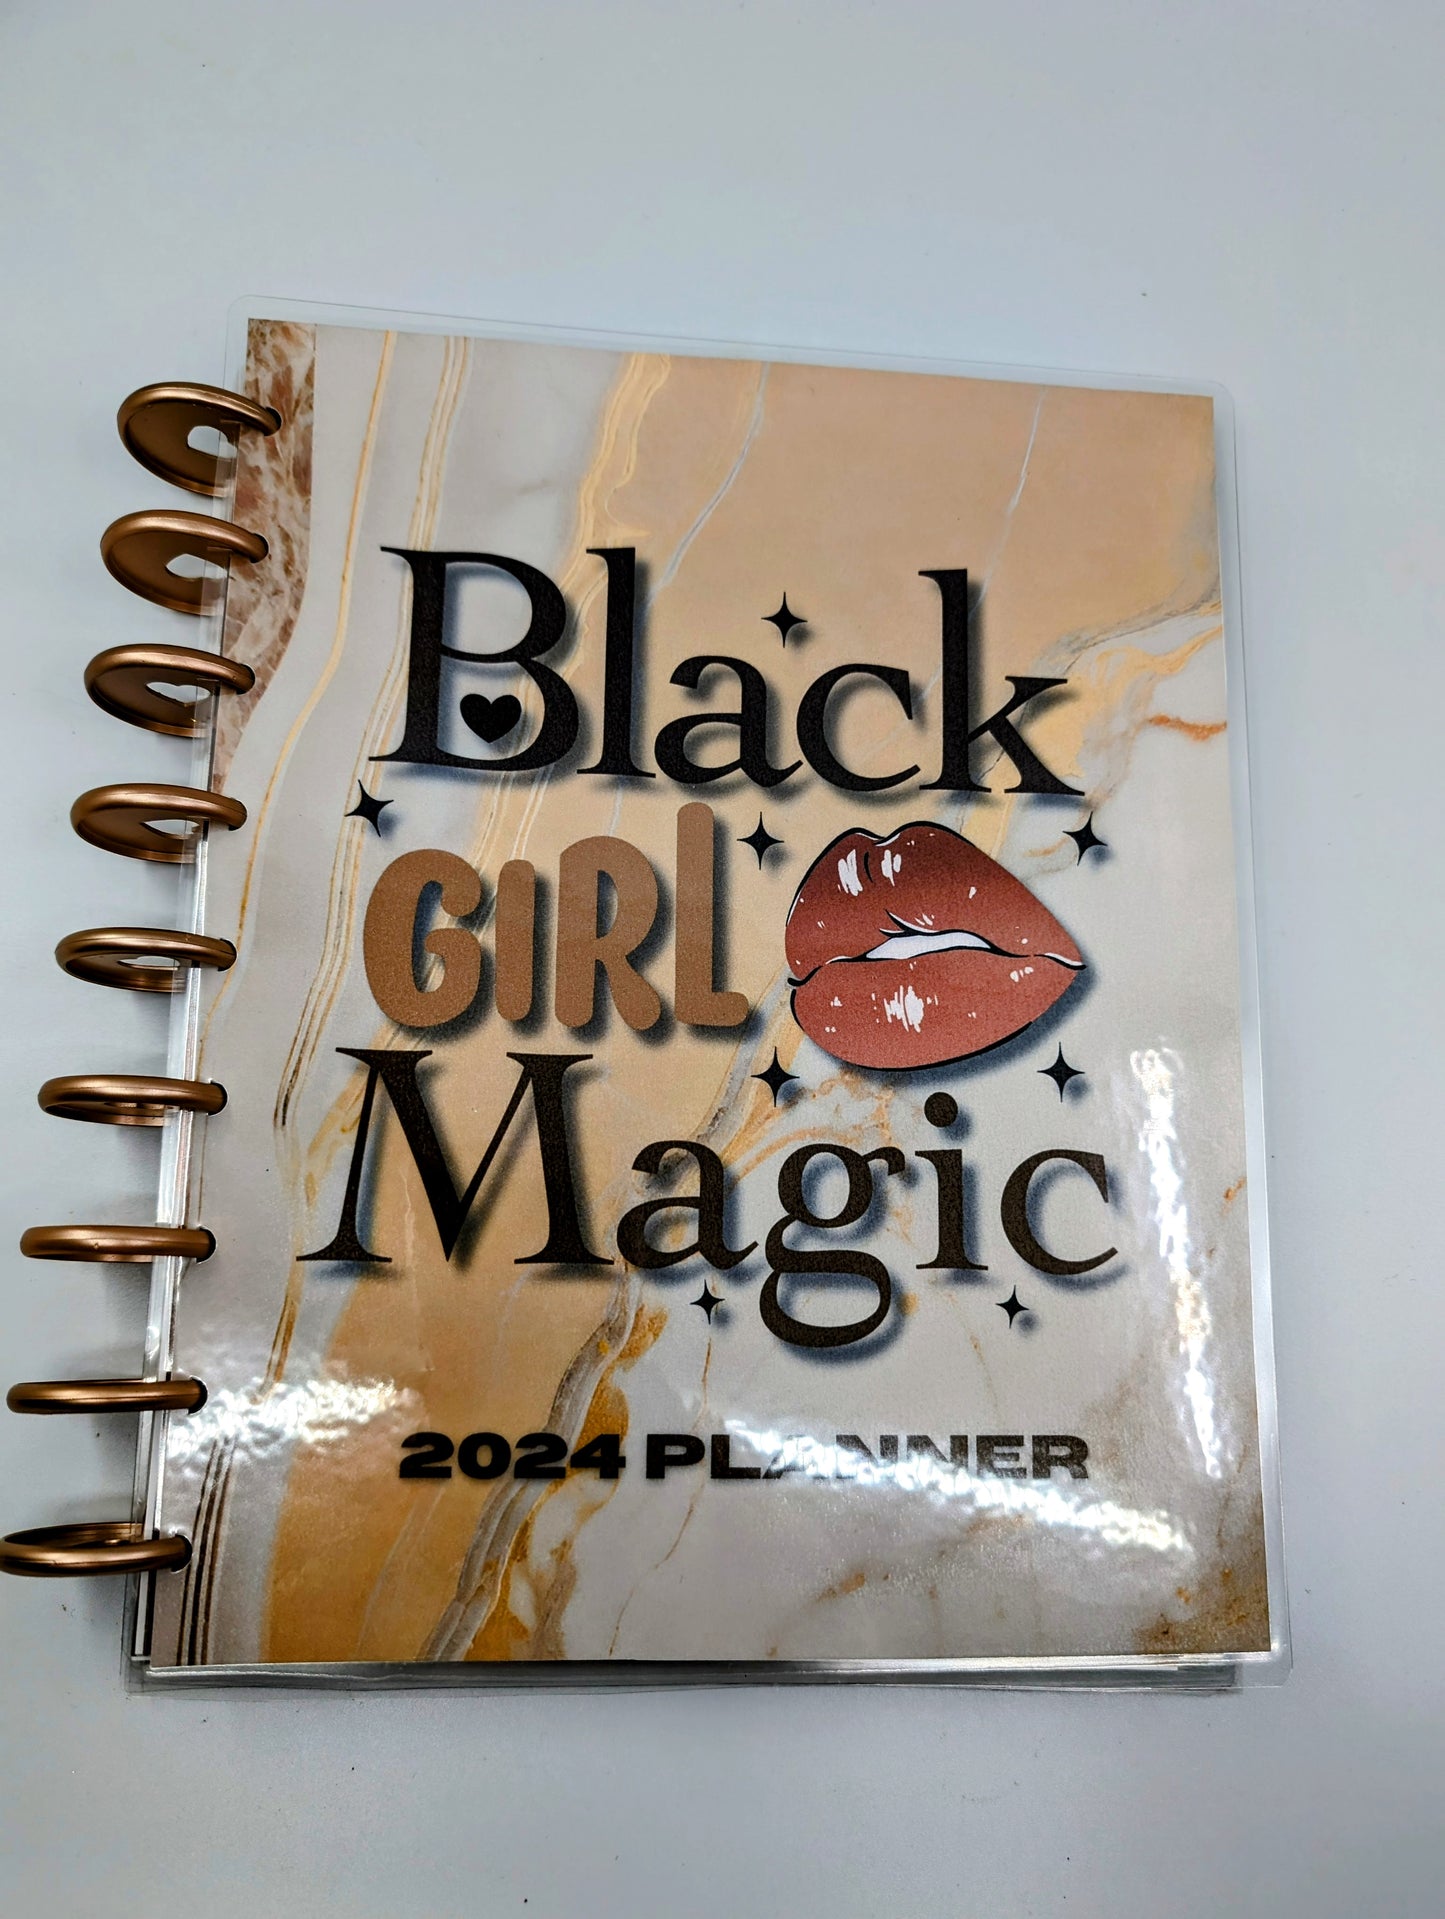 Black girl magic planner 